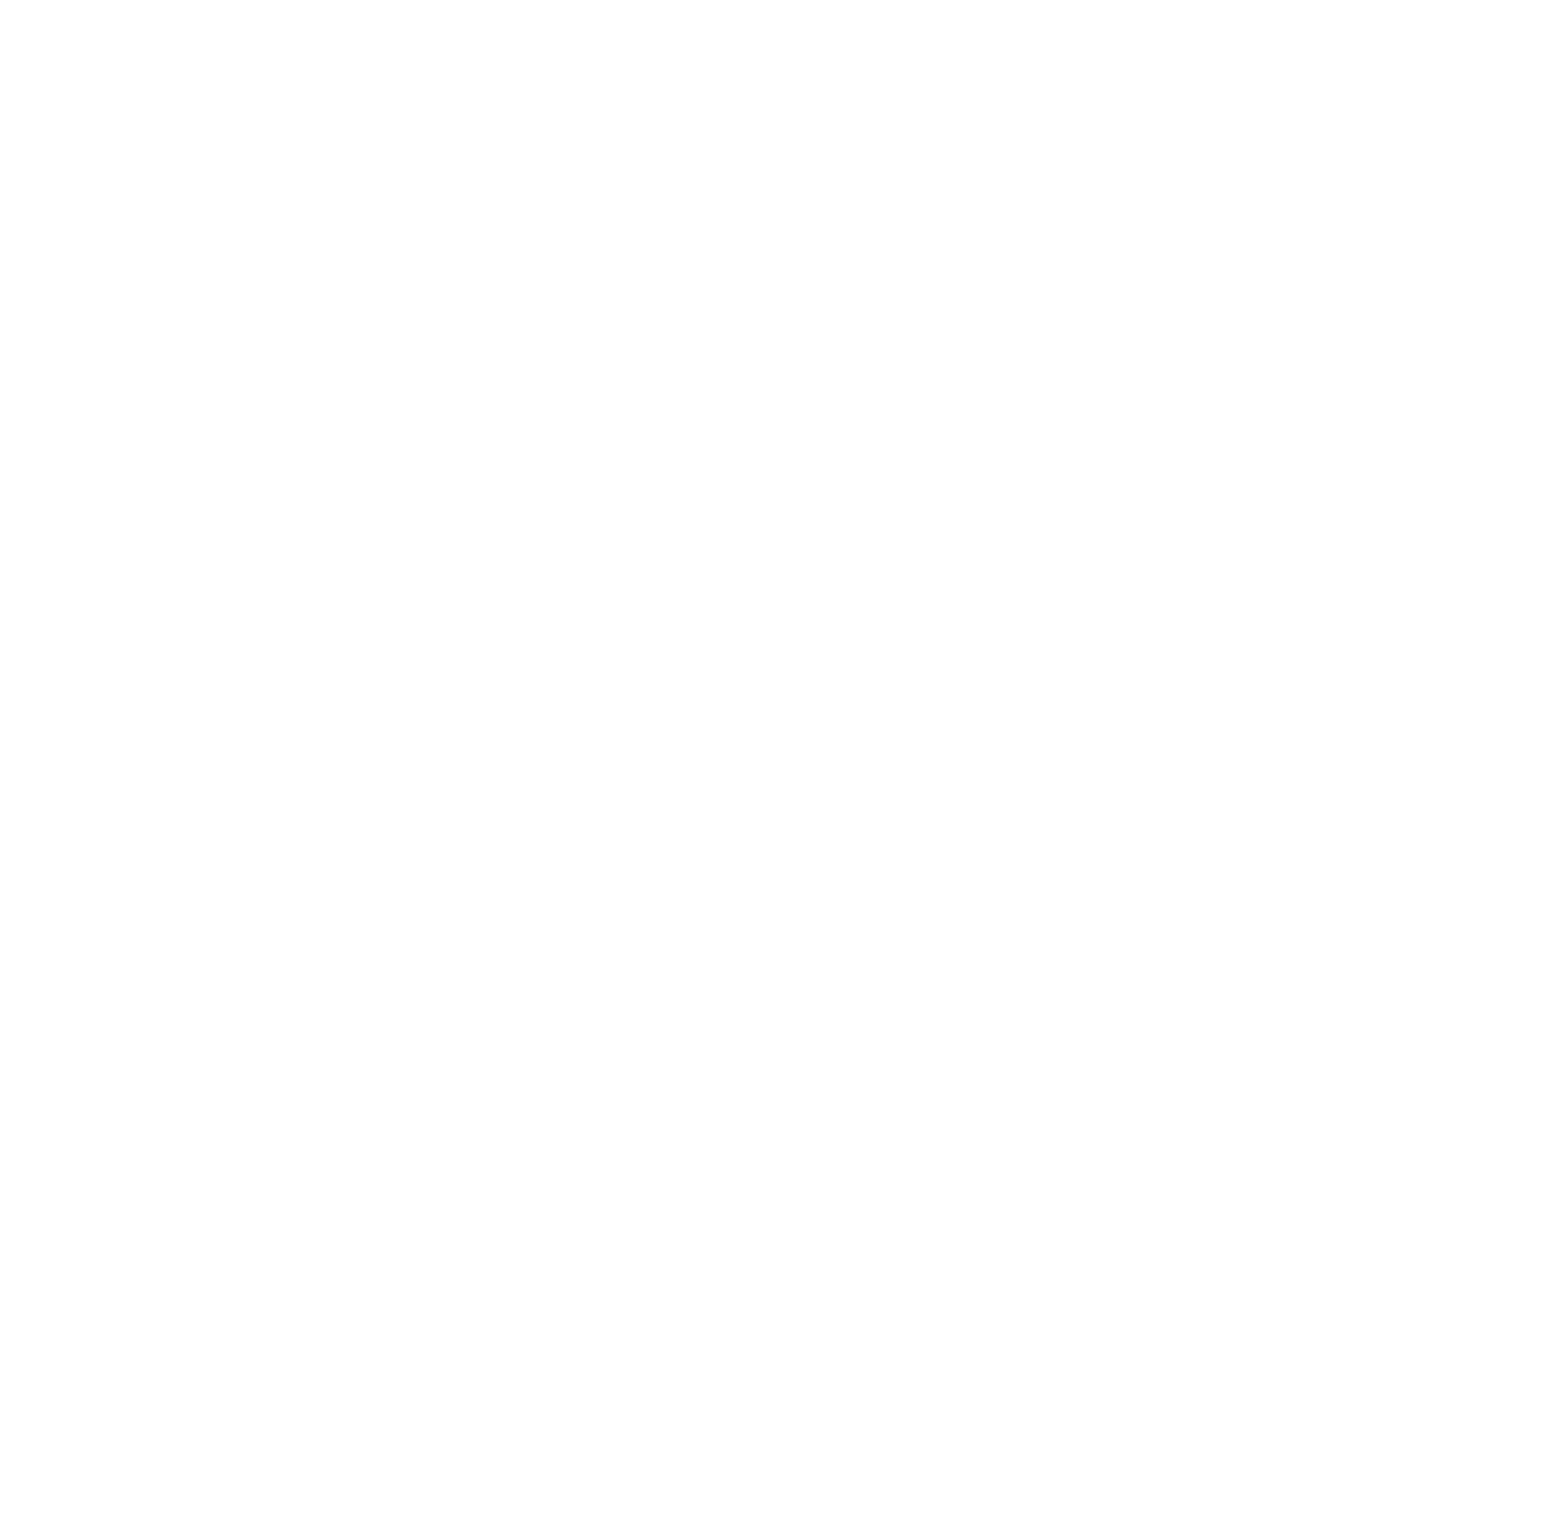 LegalZoom logo for dark backgrounds (transparent PNG)